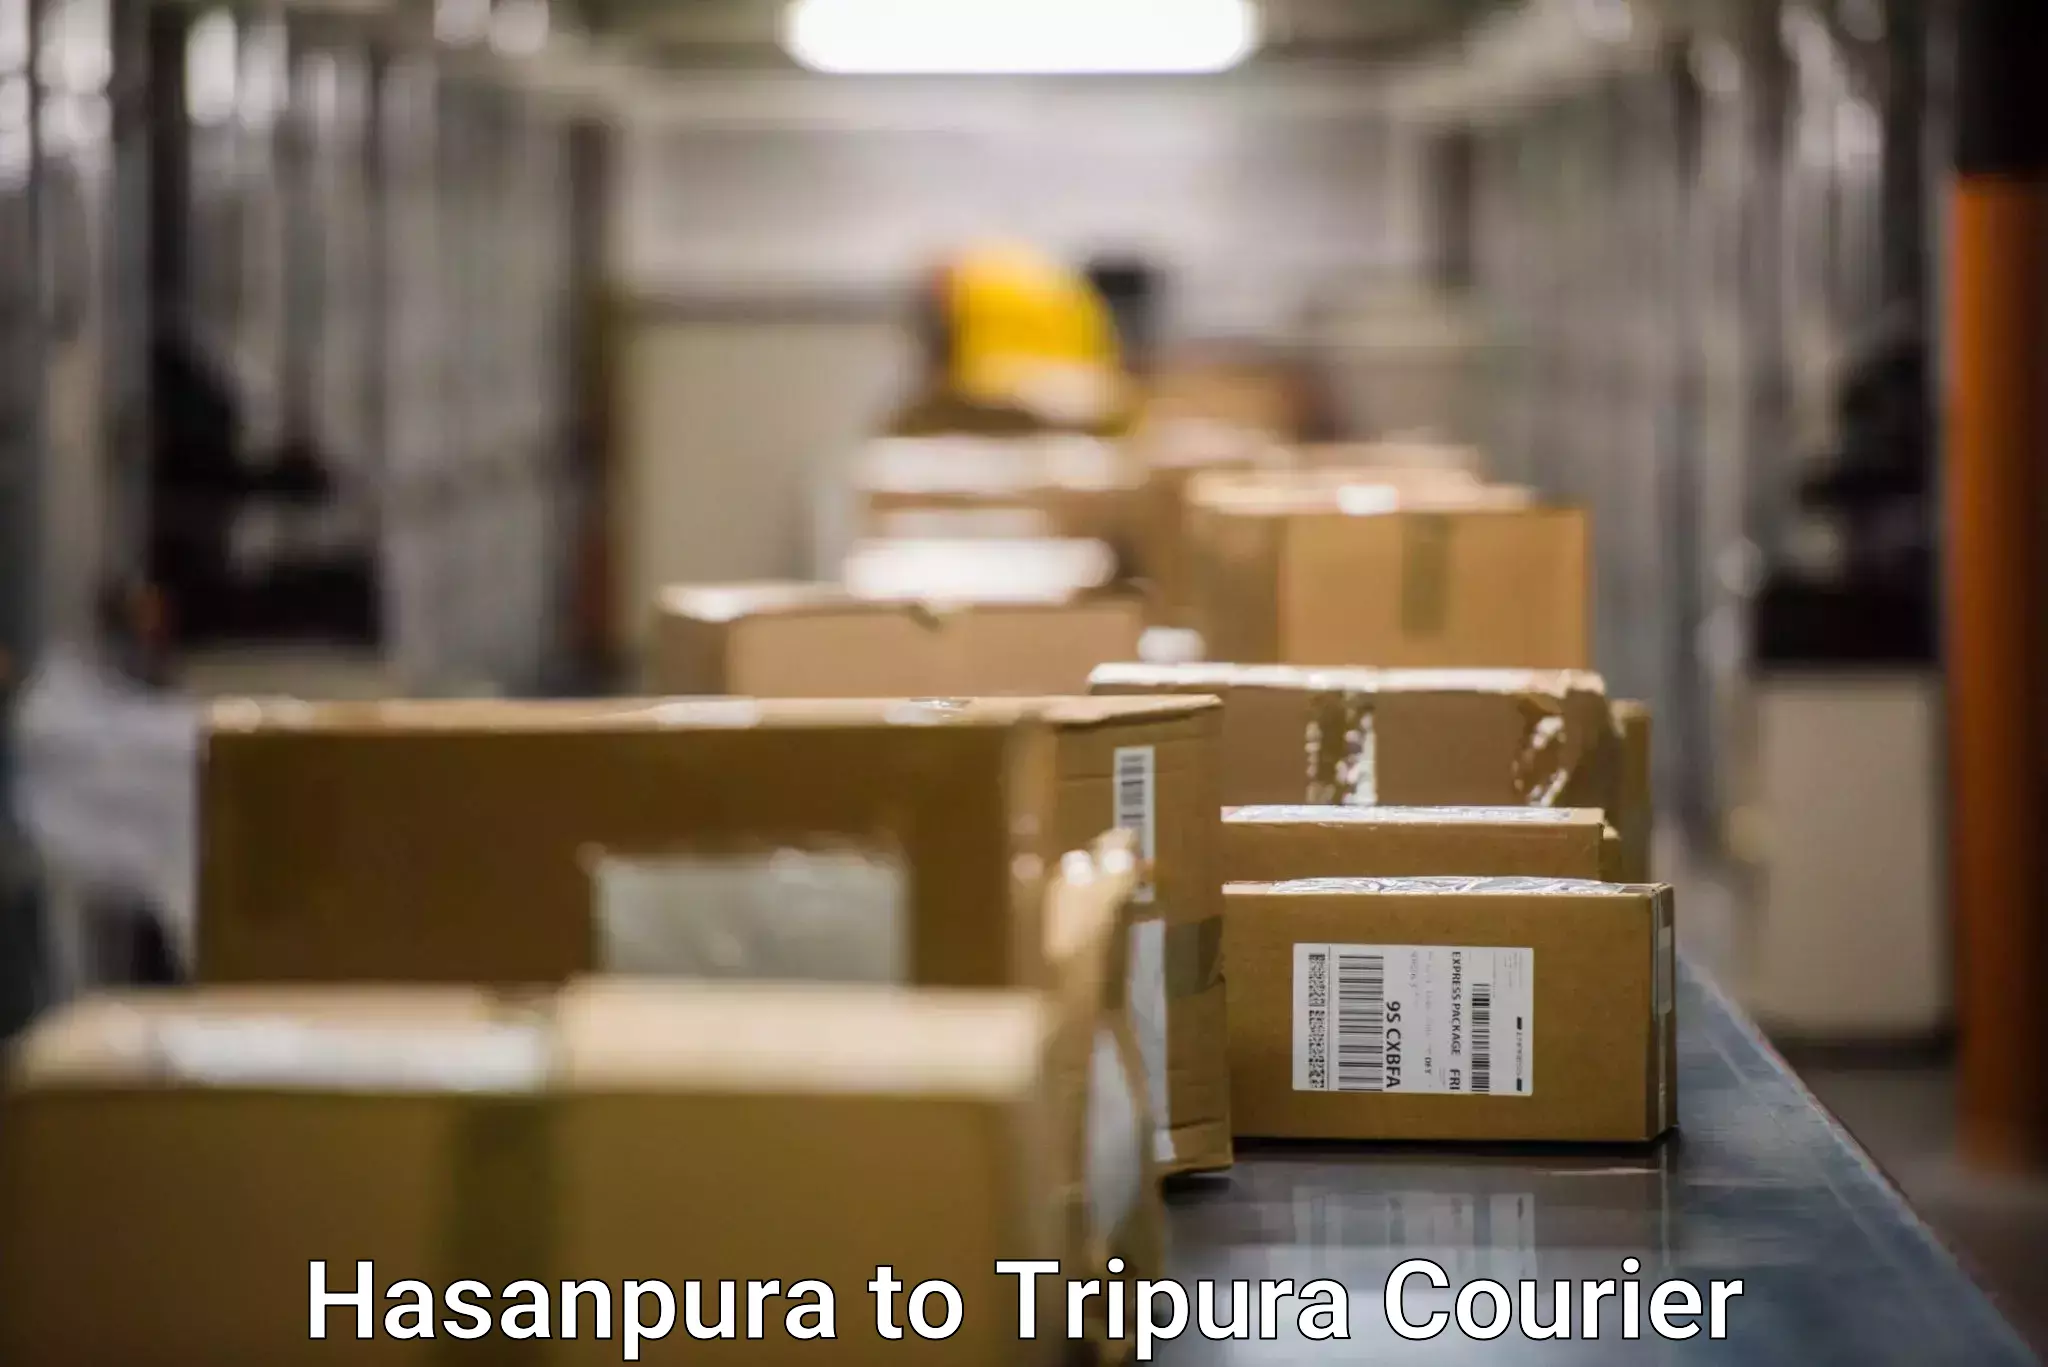 Doorstep delivery service Hasanpura to Aambasa